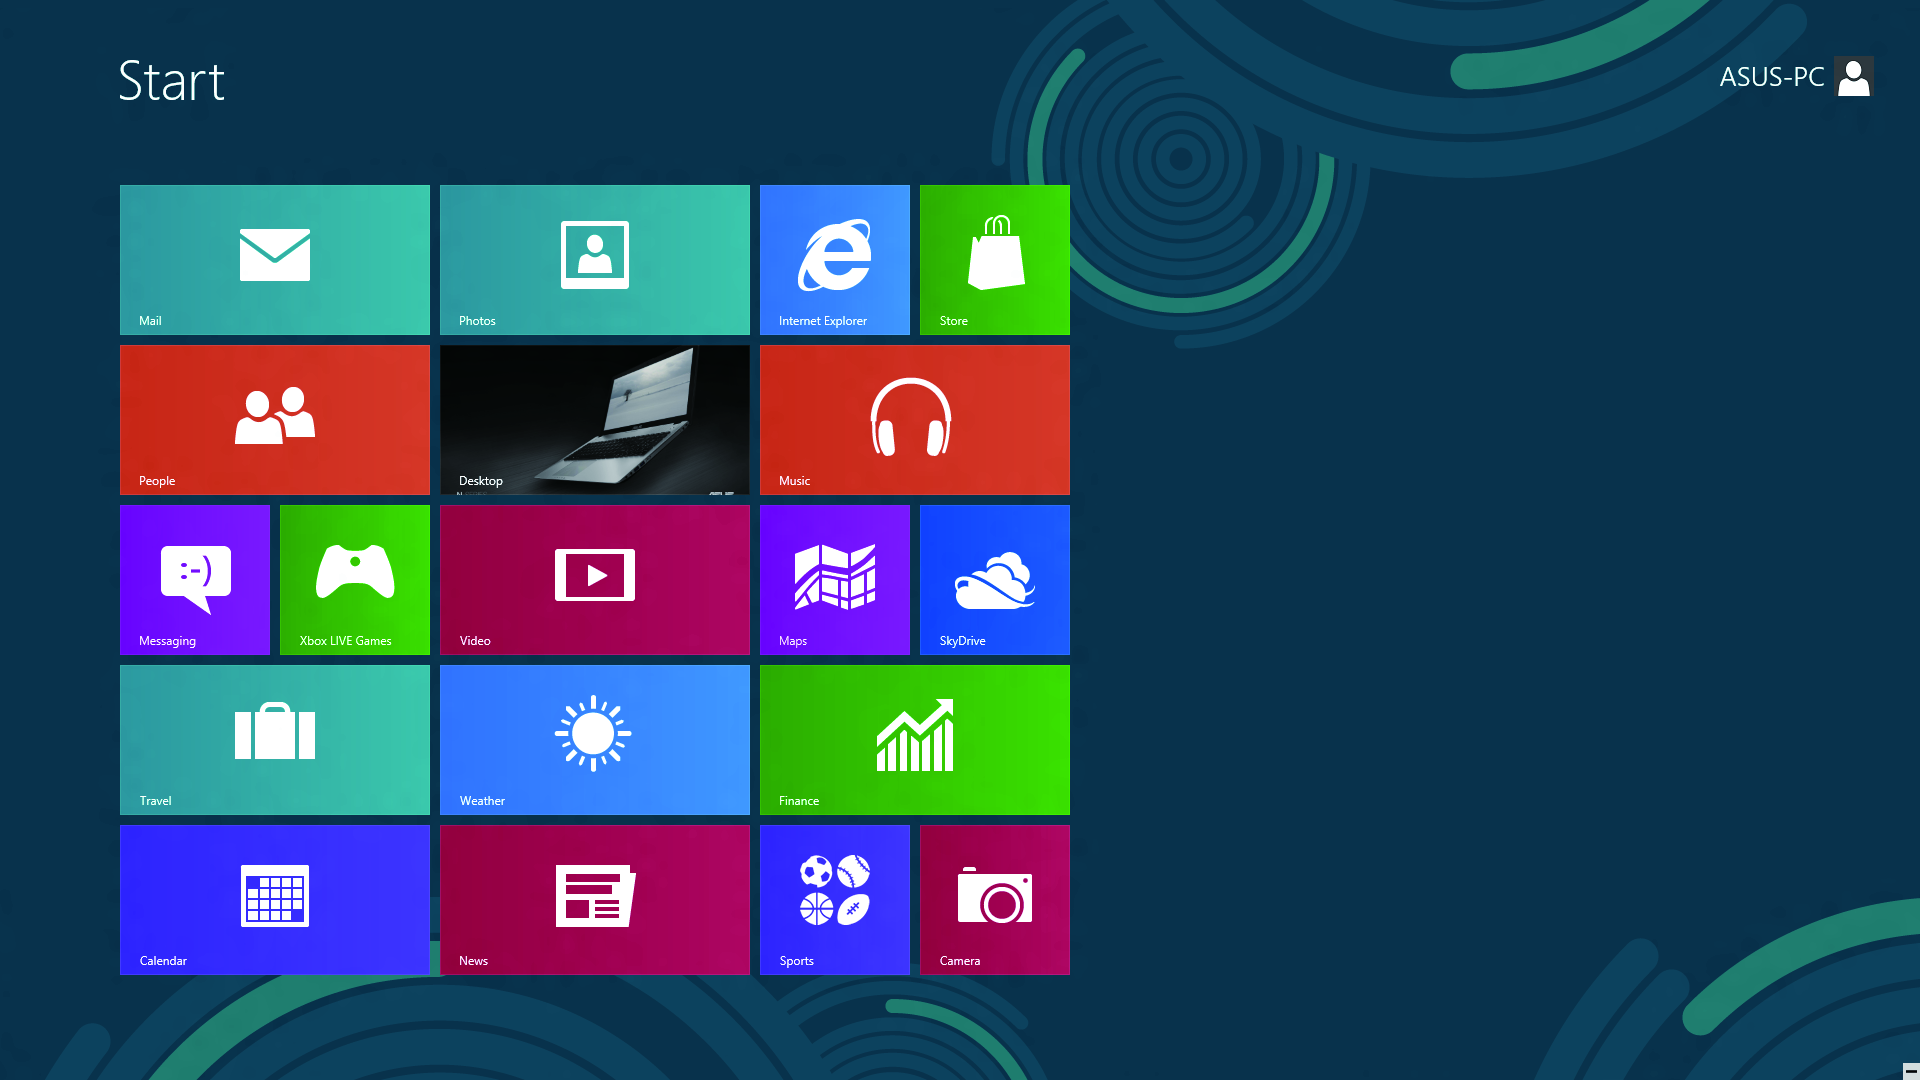 Sådan bruger du brugergrænsefladen, Windows Brugergrænsefladen, Windows, er et flisebaseret skærmlayout, der bruges i Windows 8.